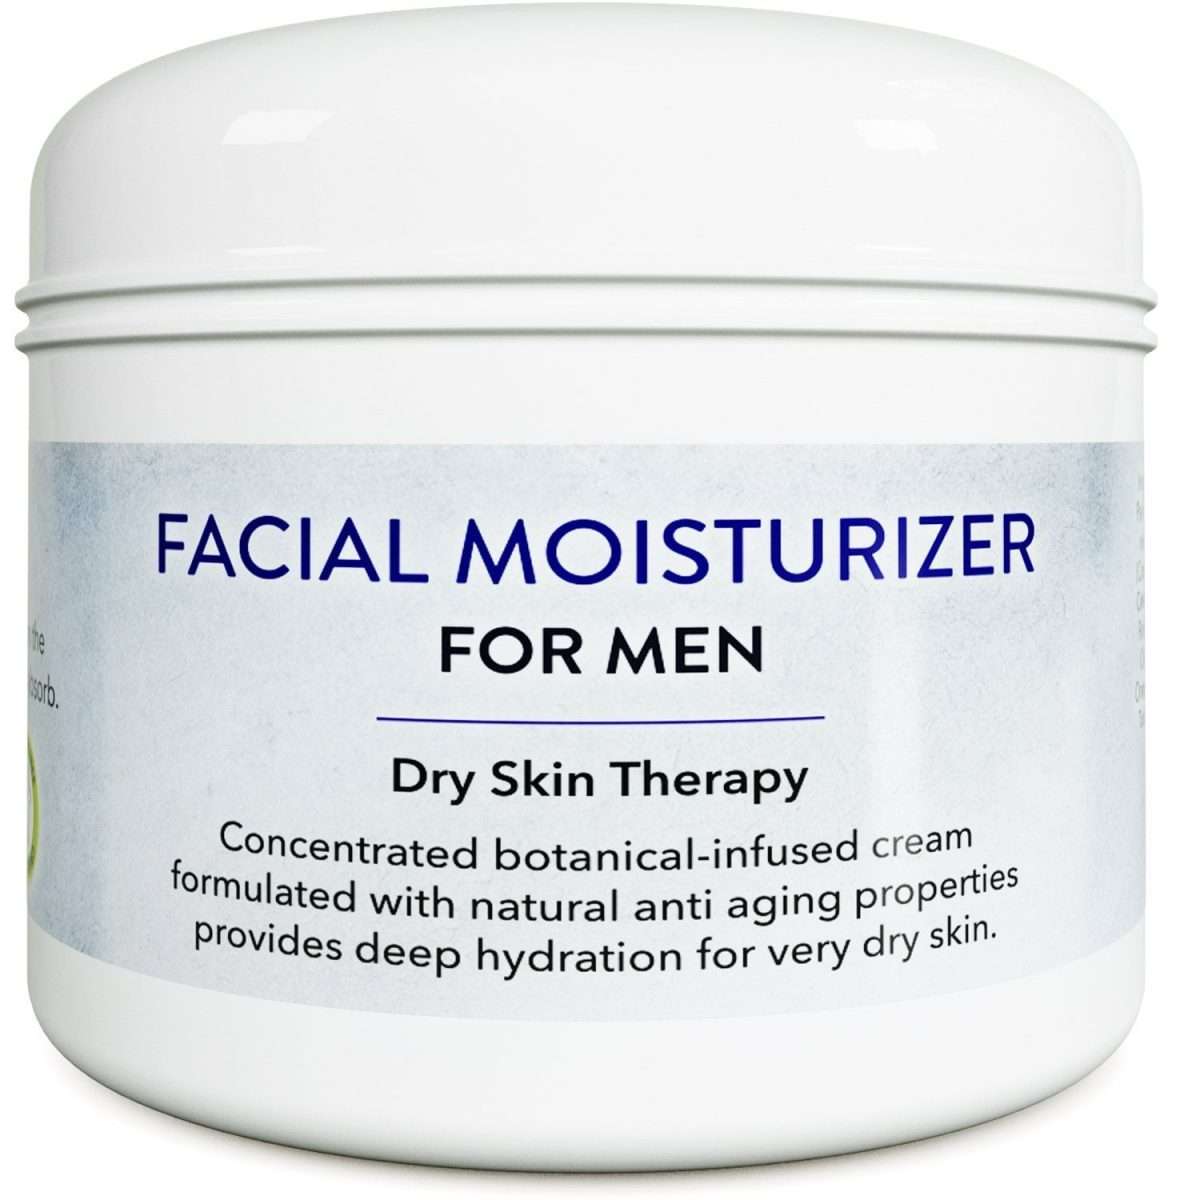 Best Face Moisturizer for dry skin